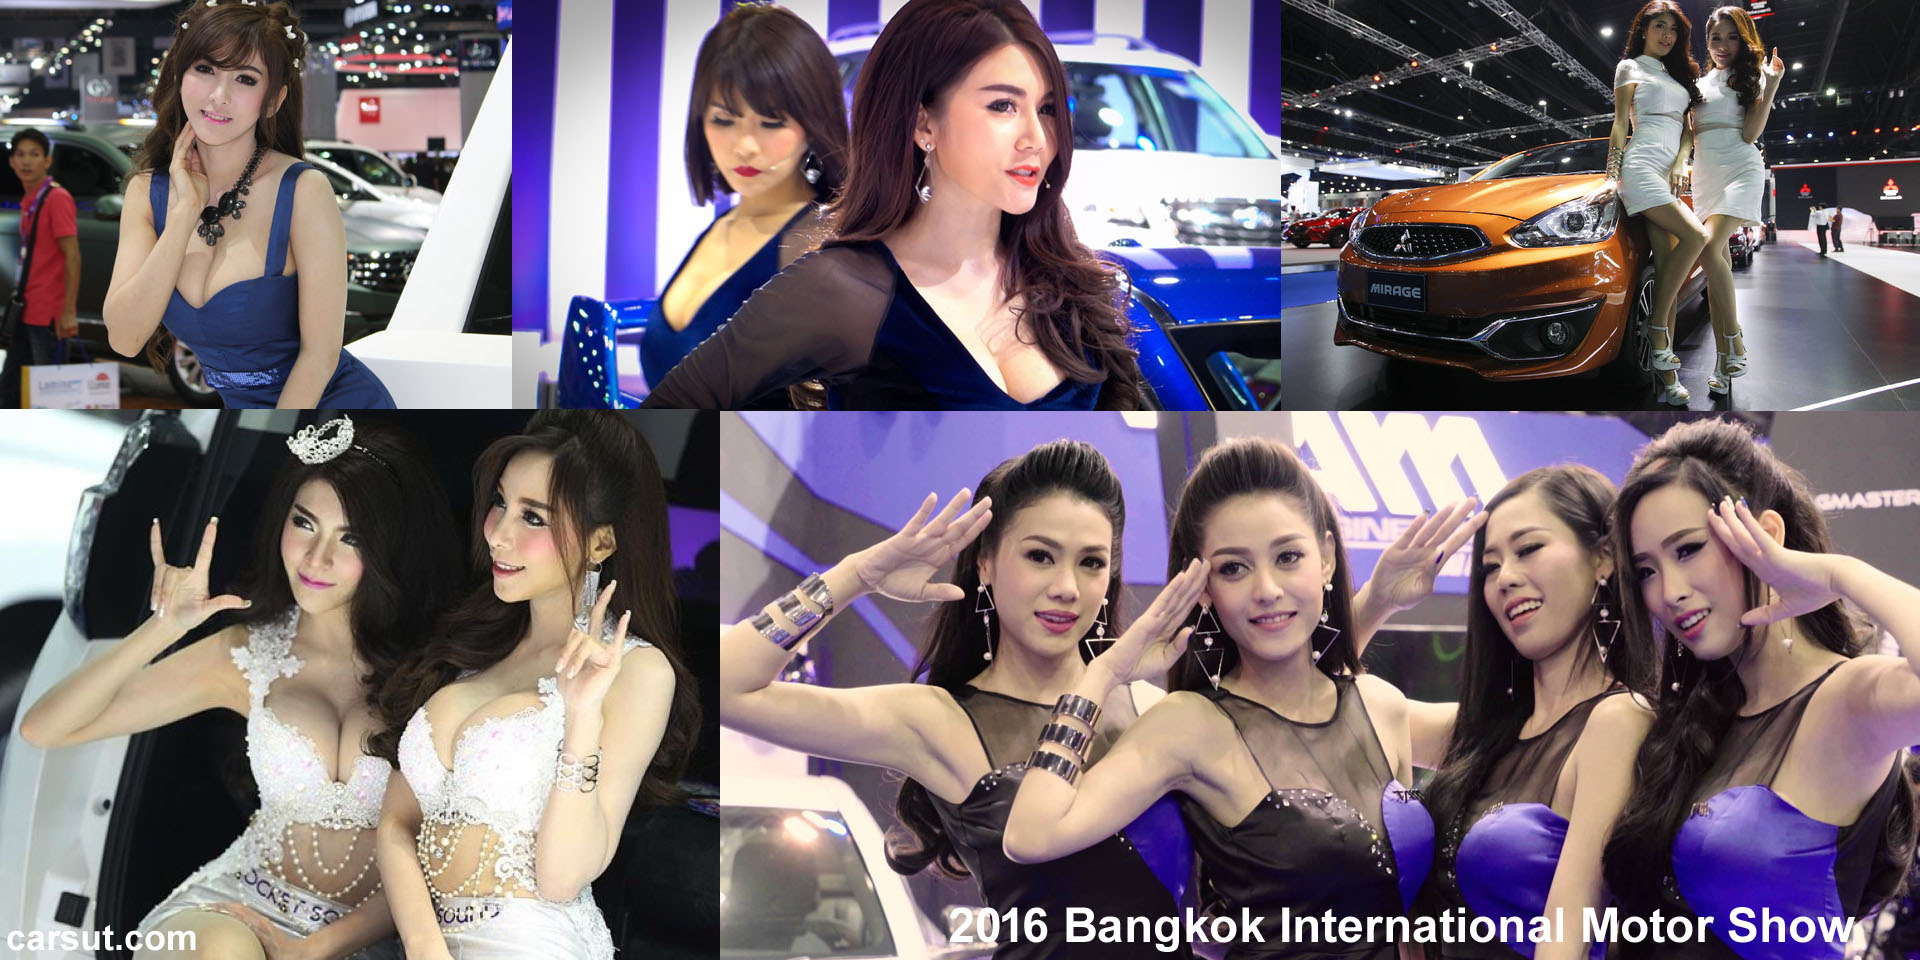 Bangkok Motor Show girls